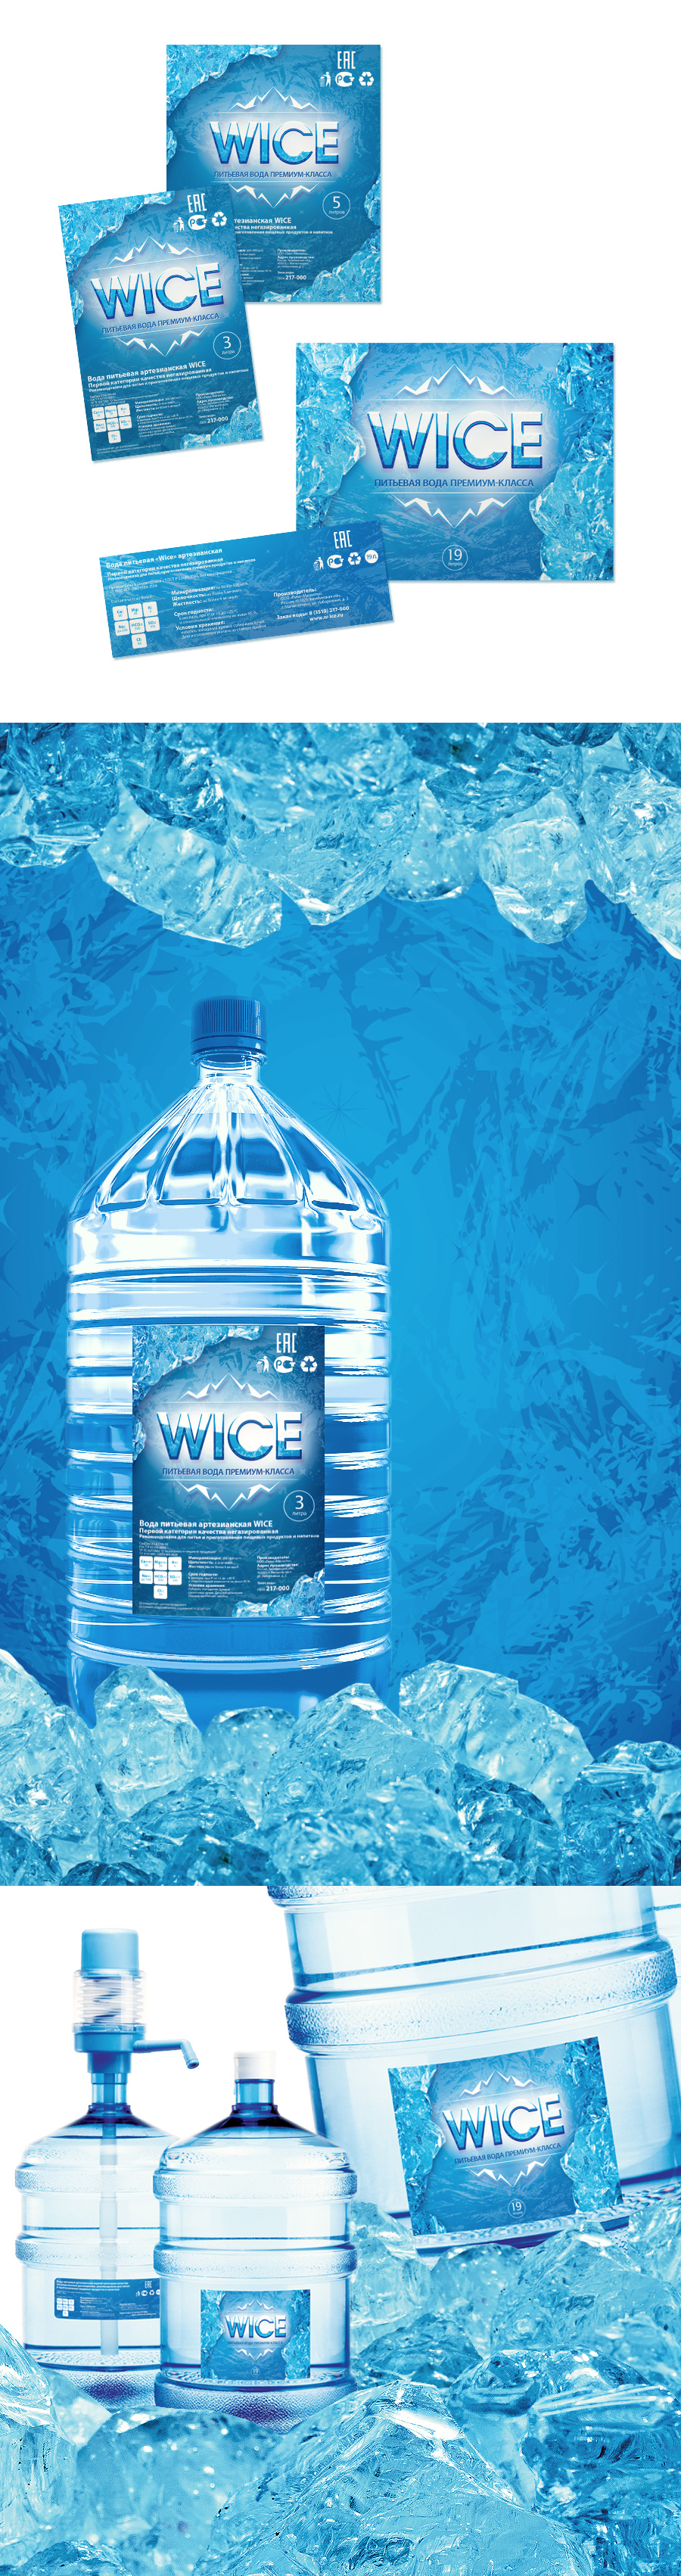 Демонстрация возможностей нового фирменного стиля питьевой воды Wice на примере оформления этикетки на бутыль